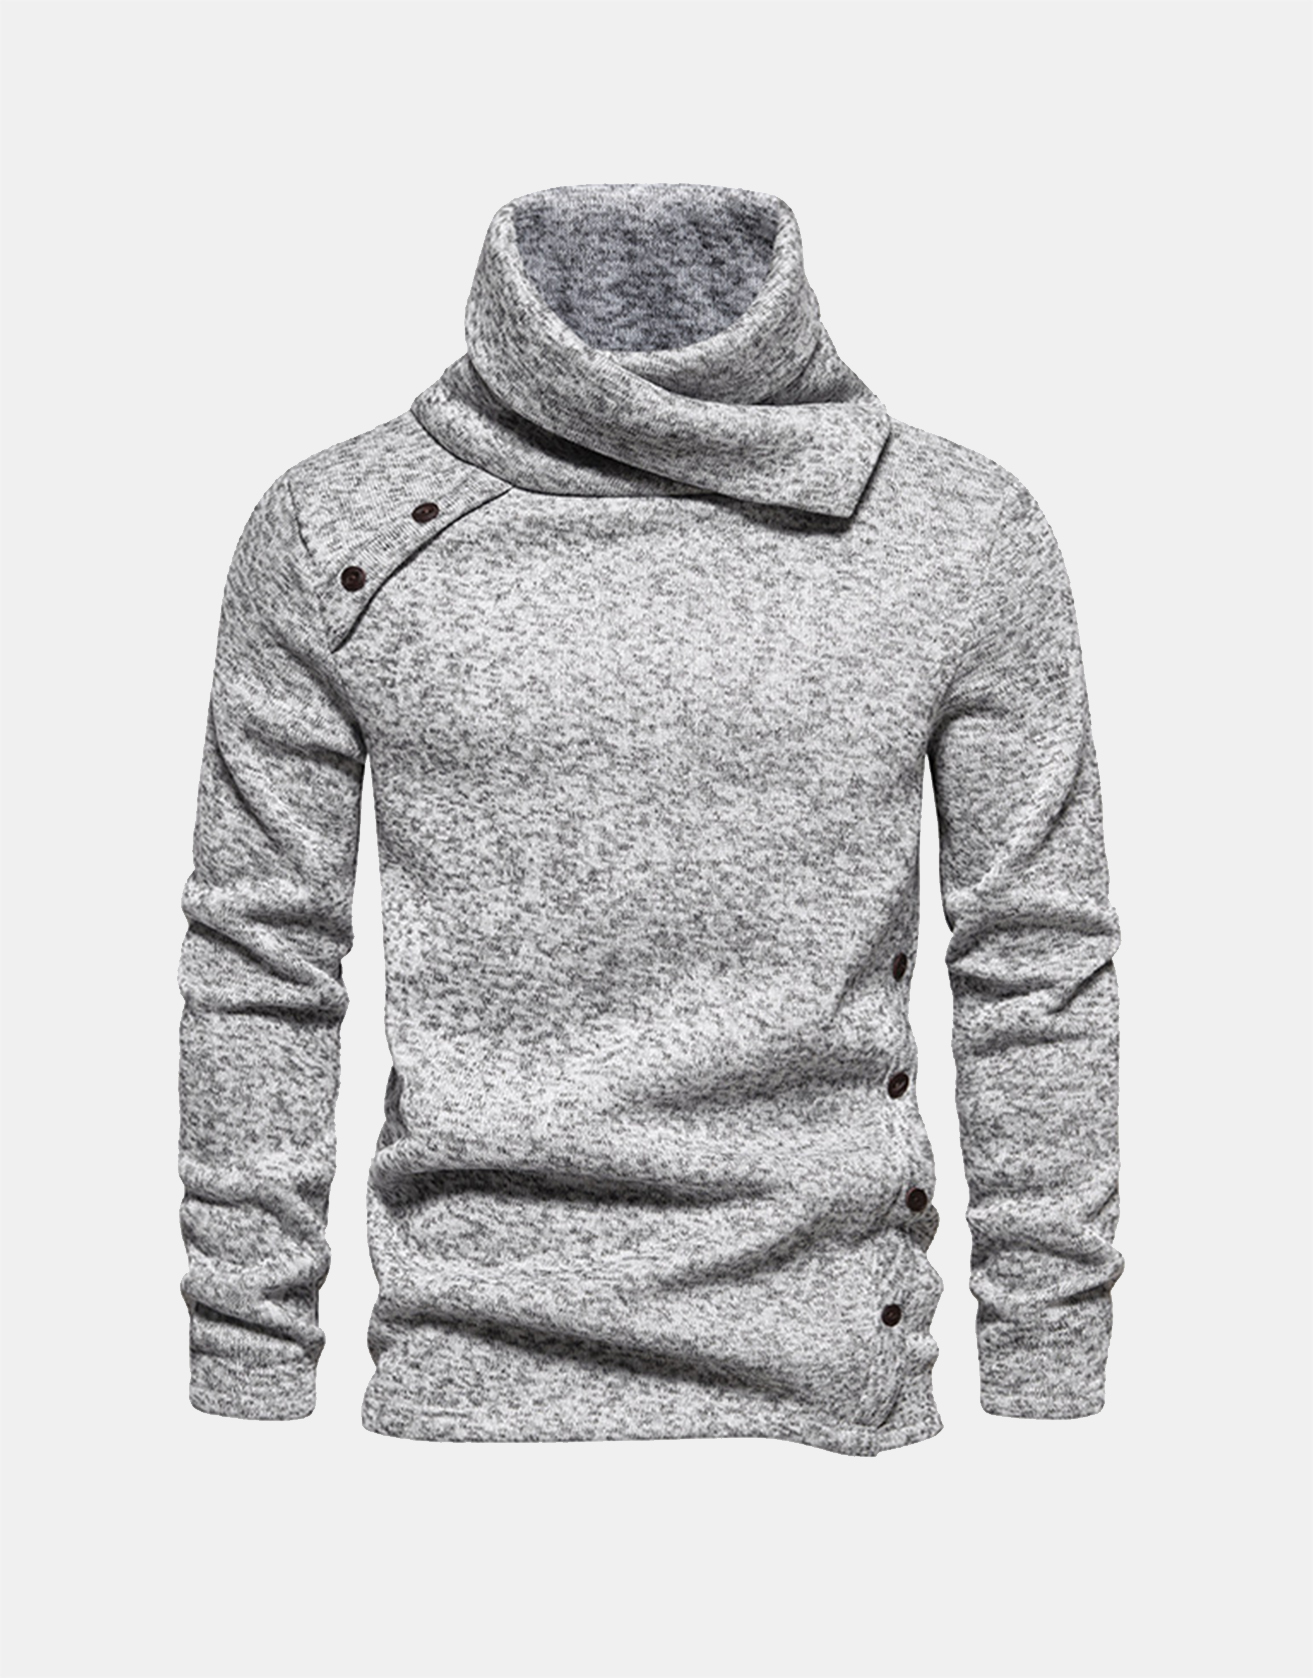 Turtleneck Buttoned Knitted Warm Sweater / TECHWEAR CLUB / Techwear